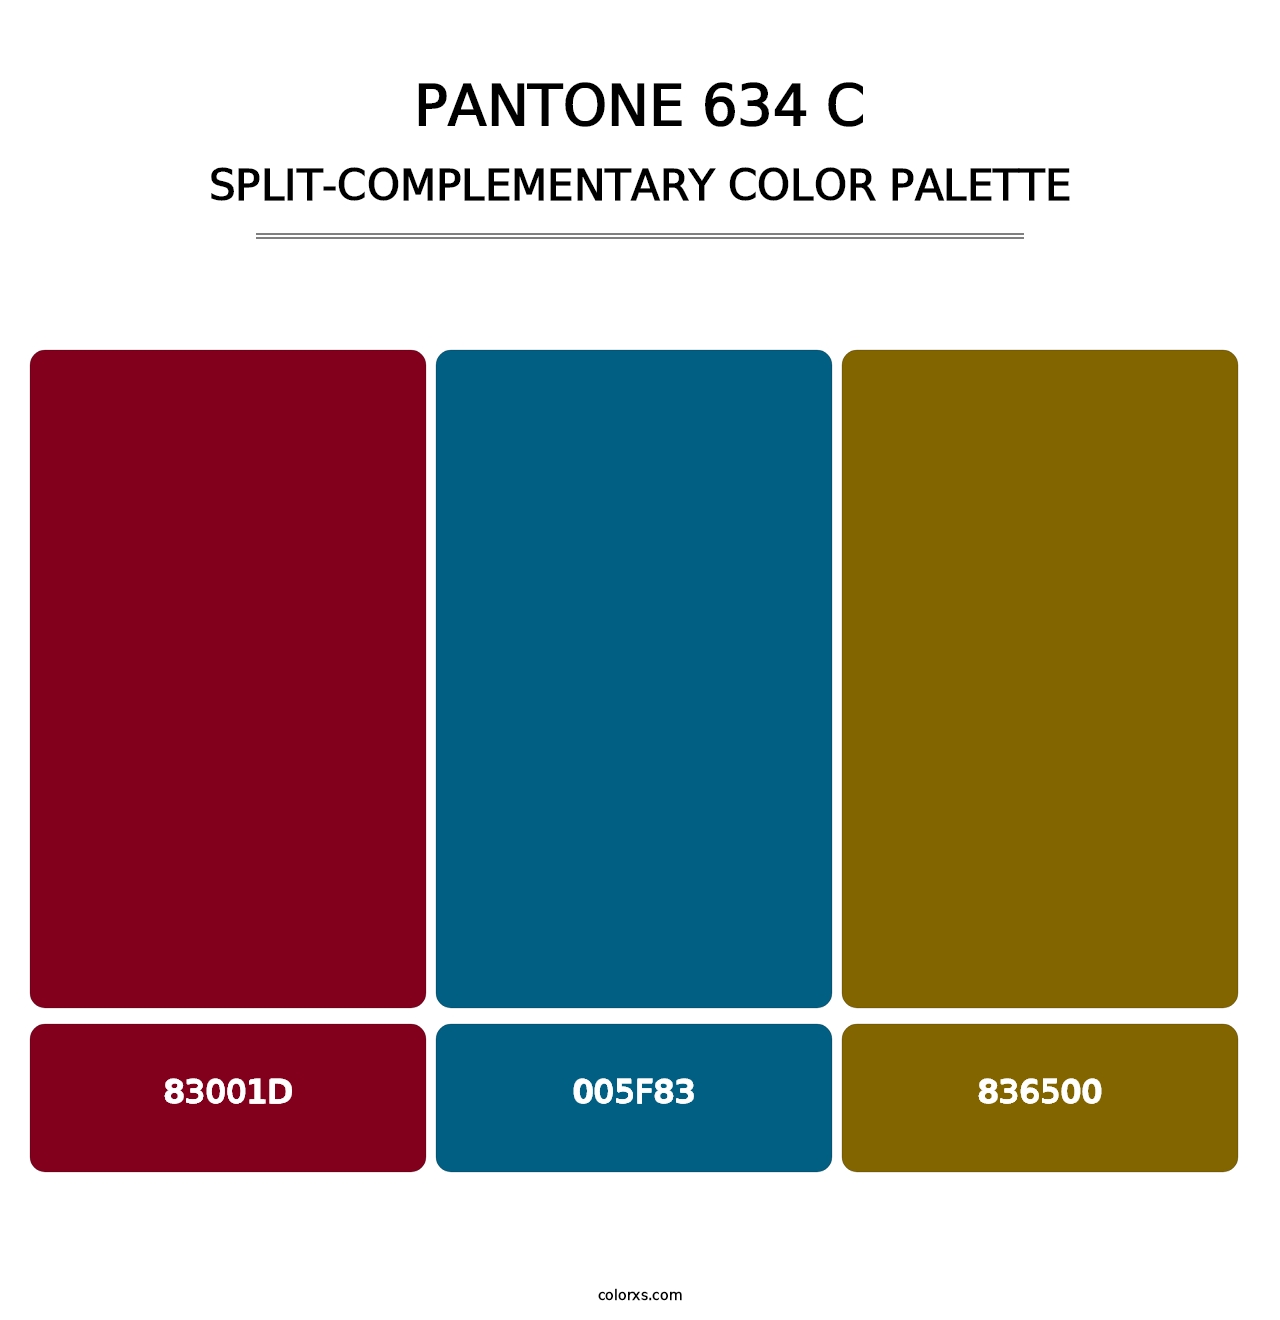 PANTONE 634 C - Split-Complementary Color Palette